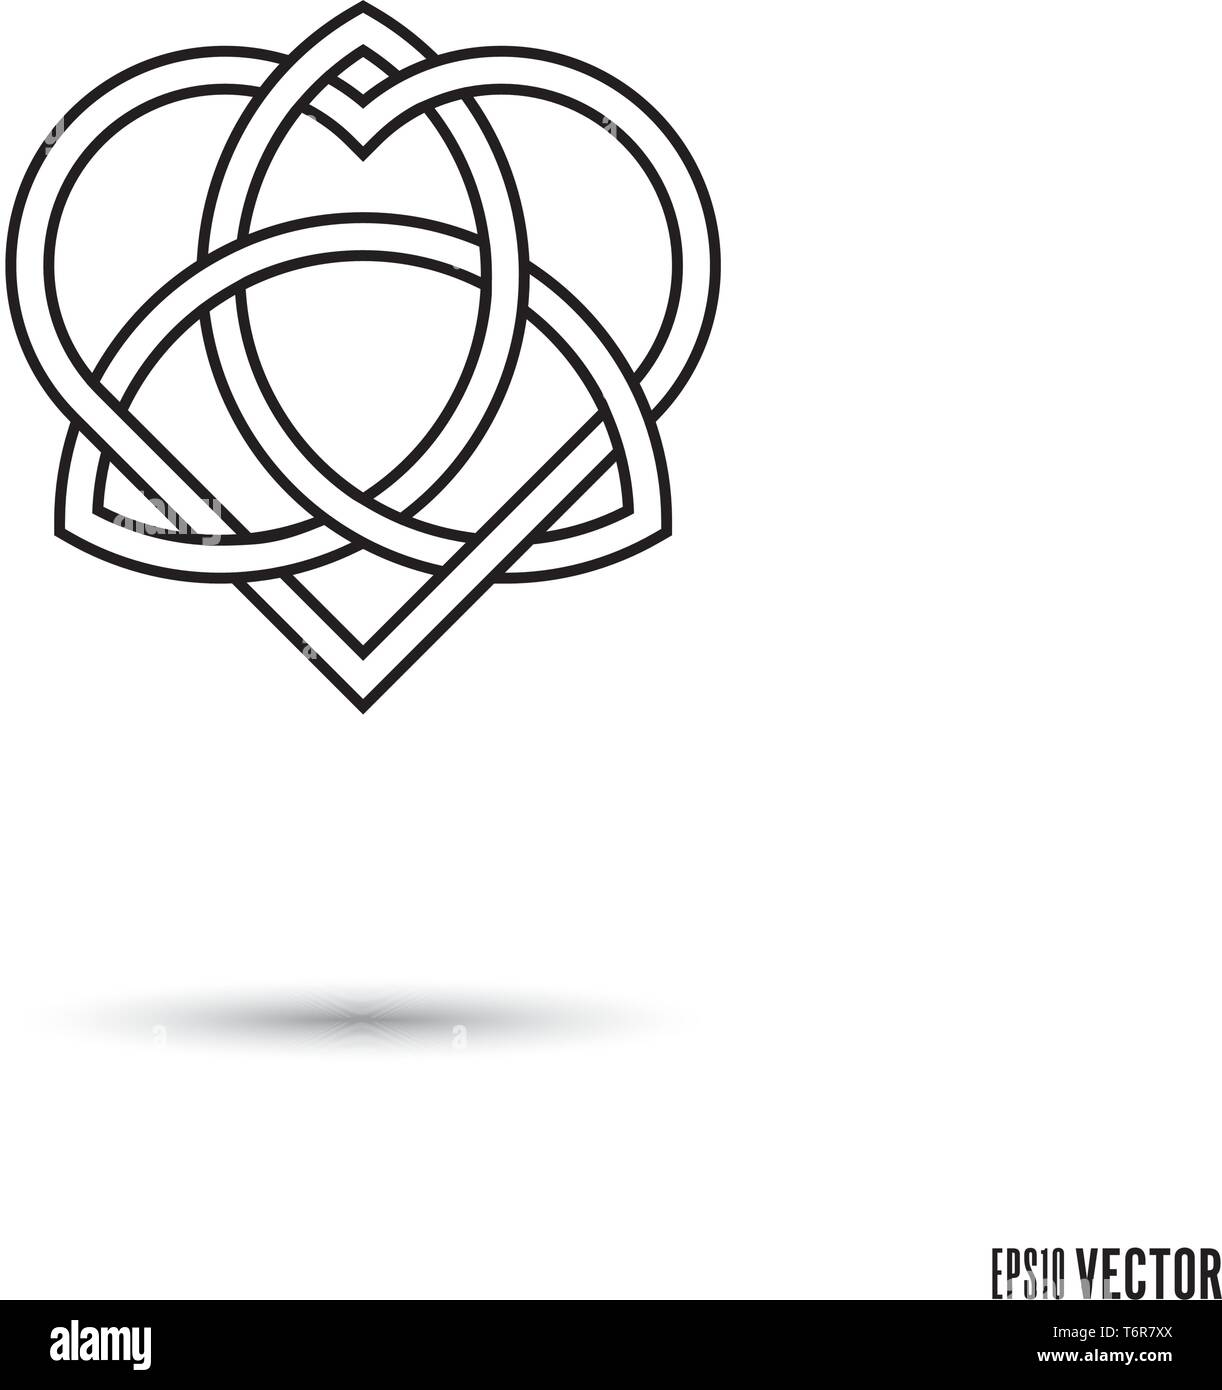 Celtic love knot, forme de coeur entrelacés symbole triquetra et ruban infini contours vector illustration Illustration de Vecteur